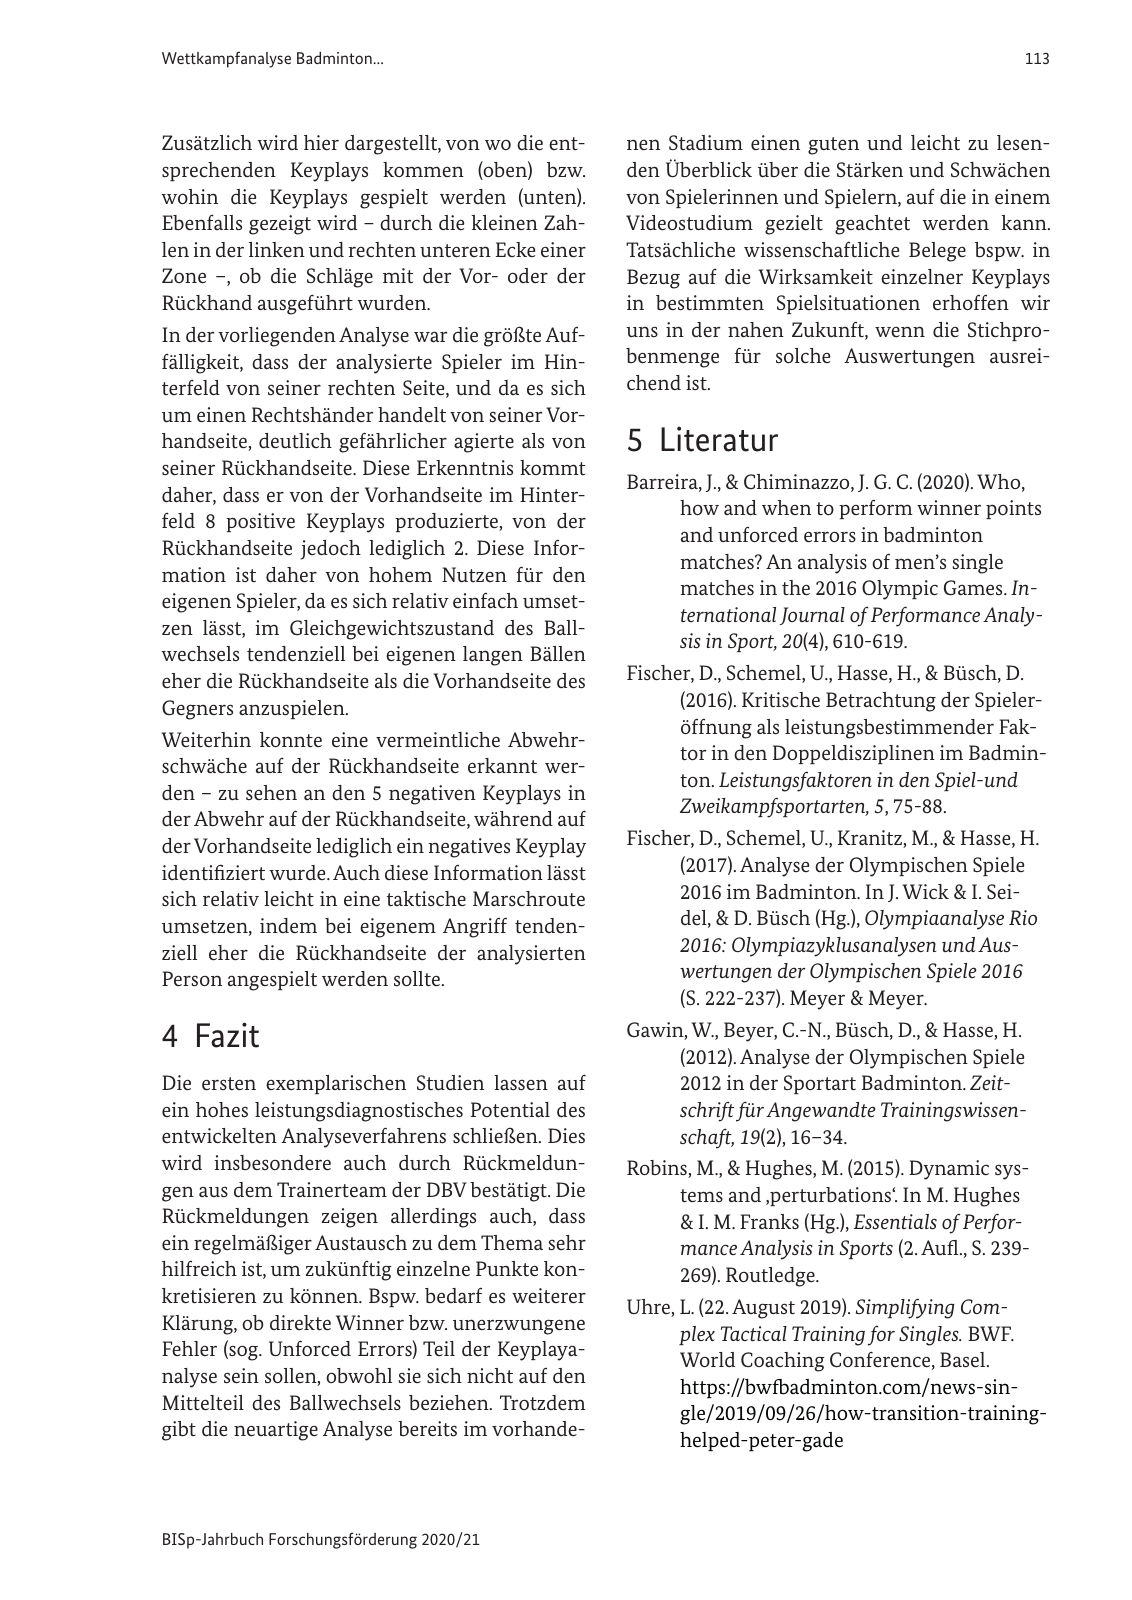 Vorschau BISp-Jahrbuch 2020/21 Seite 115